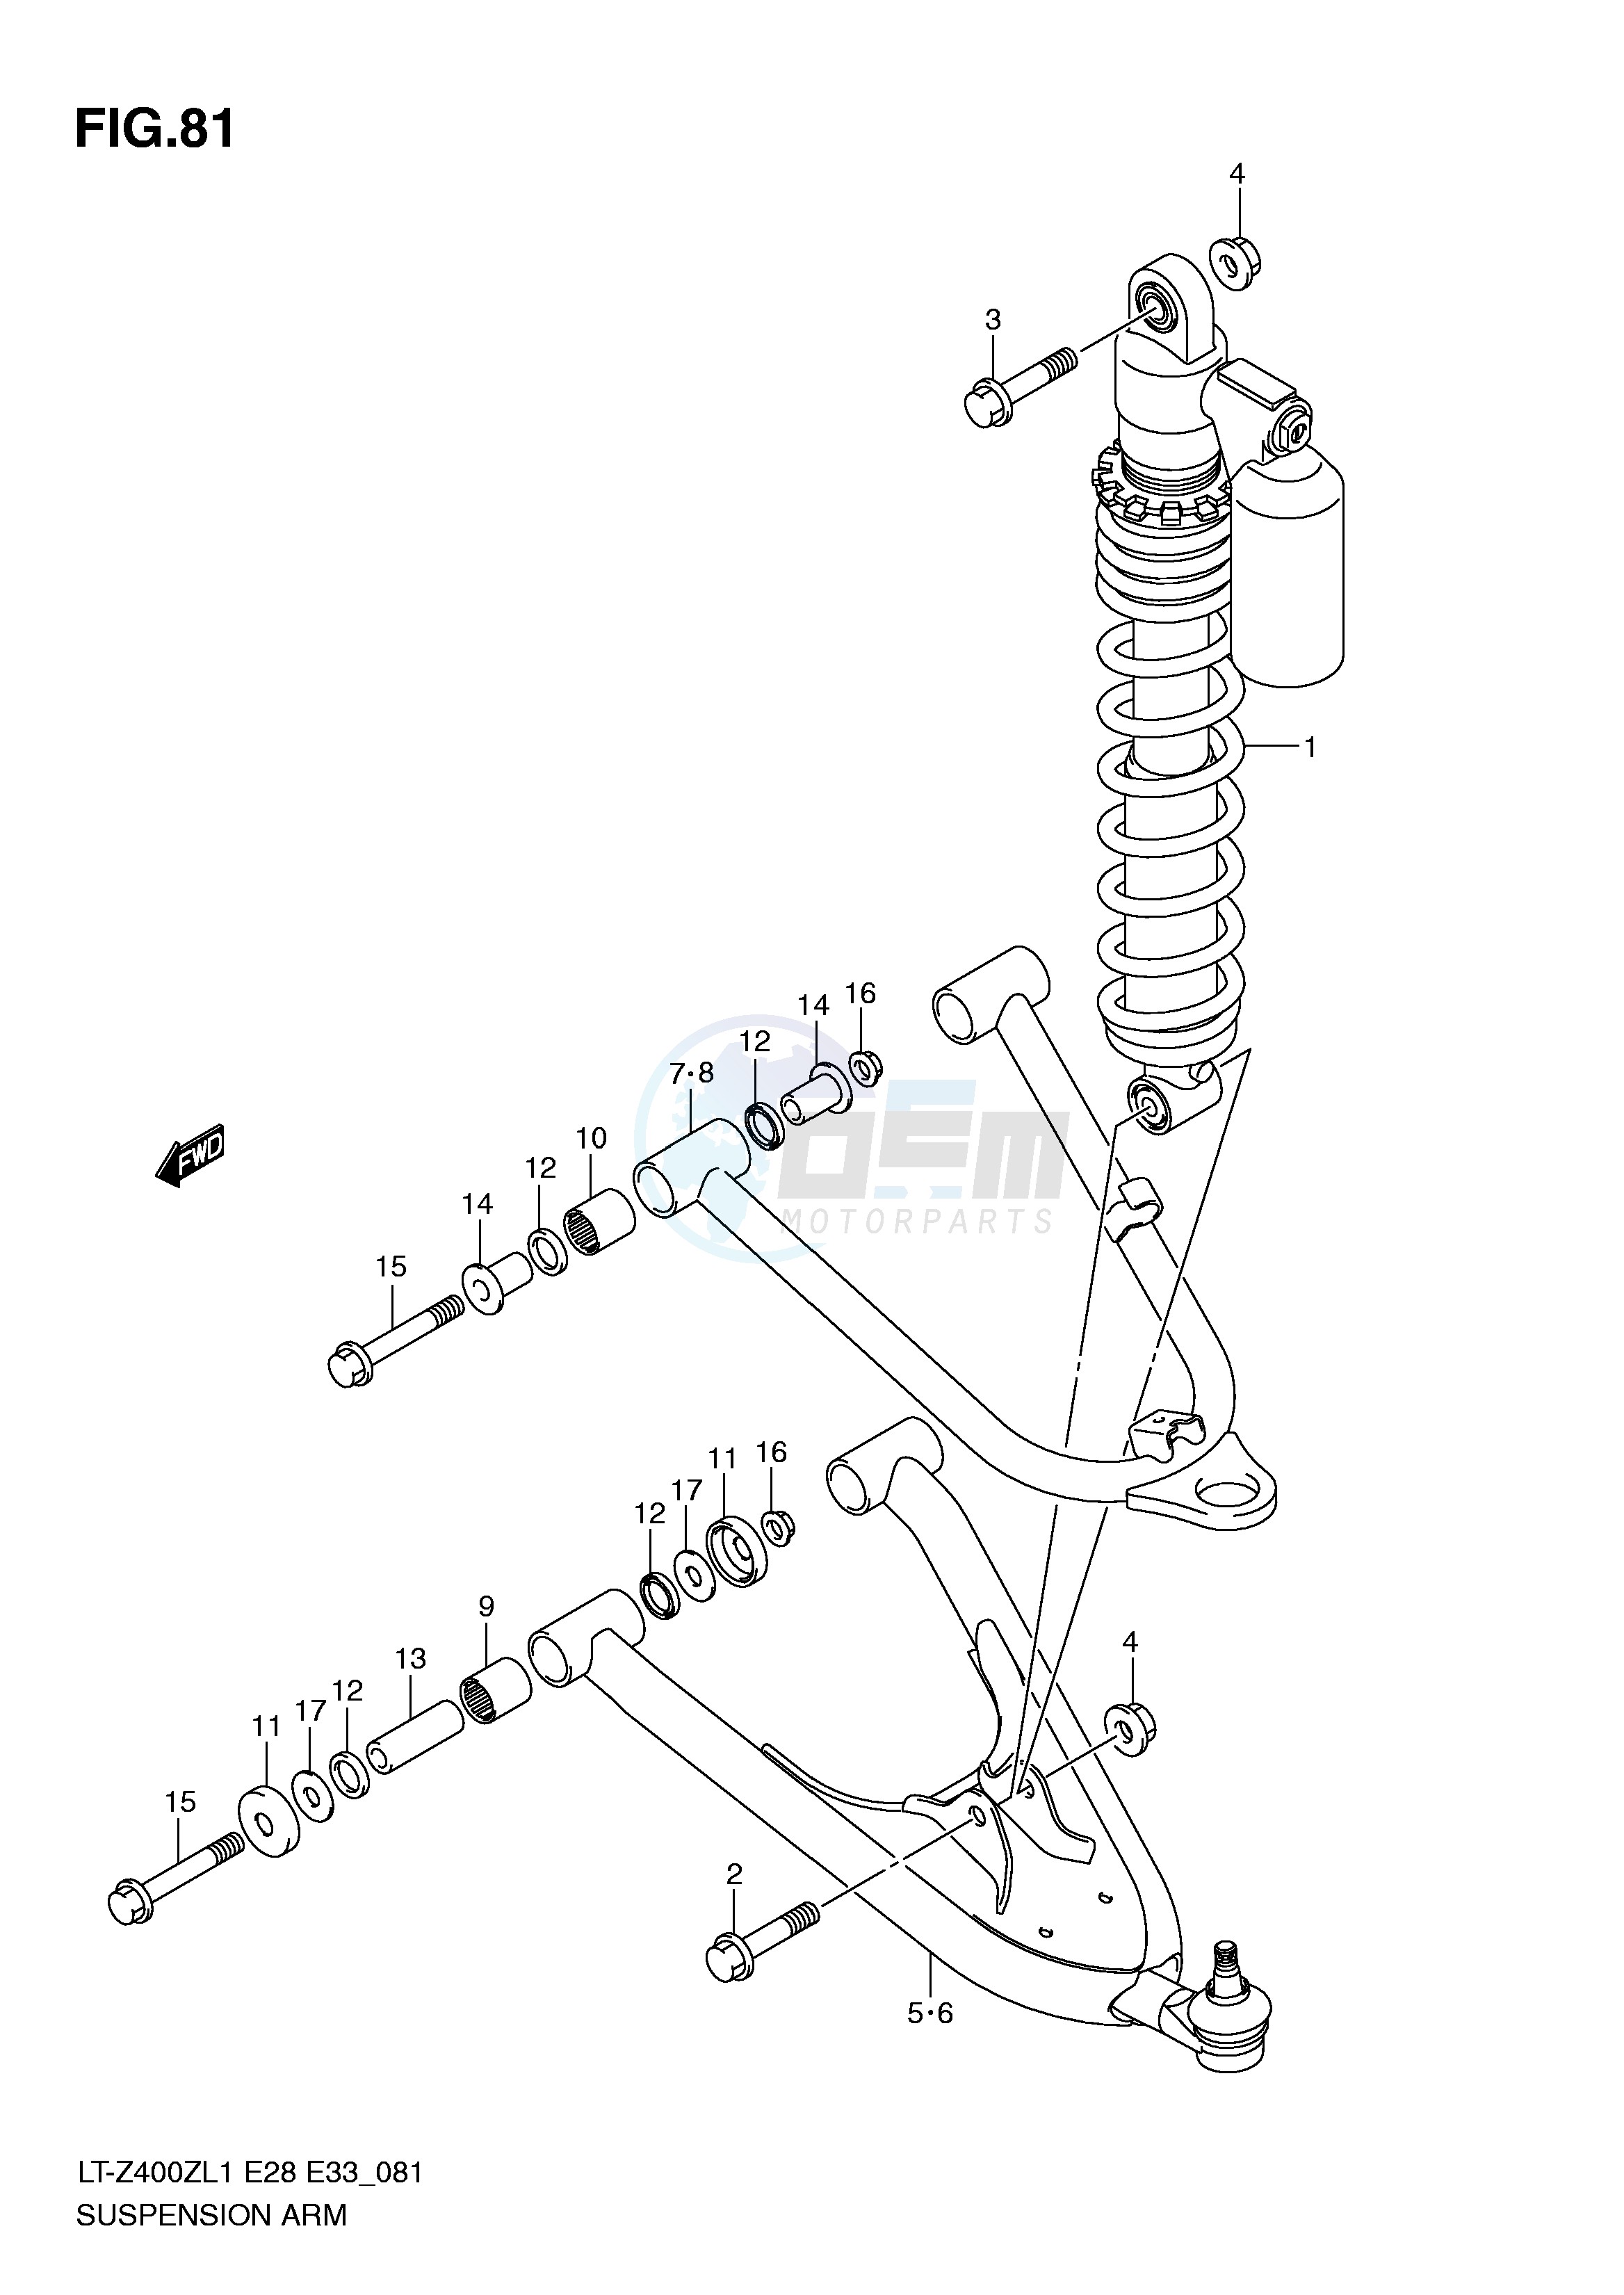 SUSPENSION ARM (LT-Z400L1 E28) blueprint